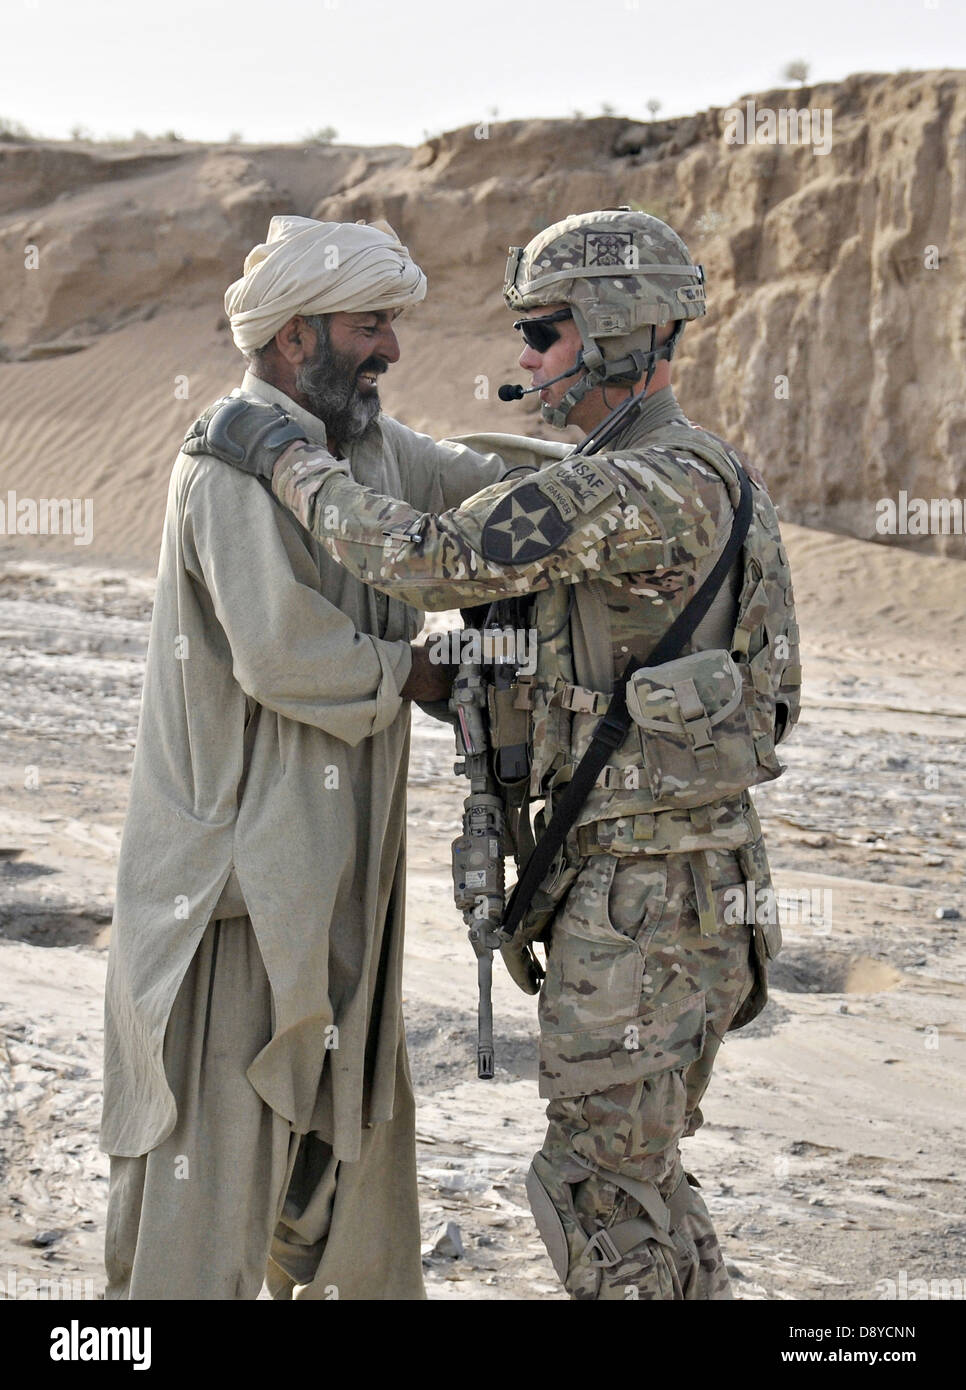 US Army Captain Troy Yoho tauscht Grüße mit einem afghanischen Bauern während seiner Einheit eine abgesessene Patrouille 2. Juni 2013 in der Nähe von Forward Operating Base Spin Boldak, Provinz Kandahar, Afghanistan führt. Stockfoto